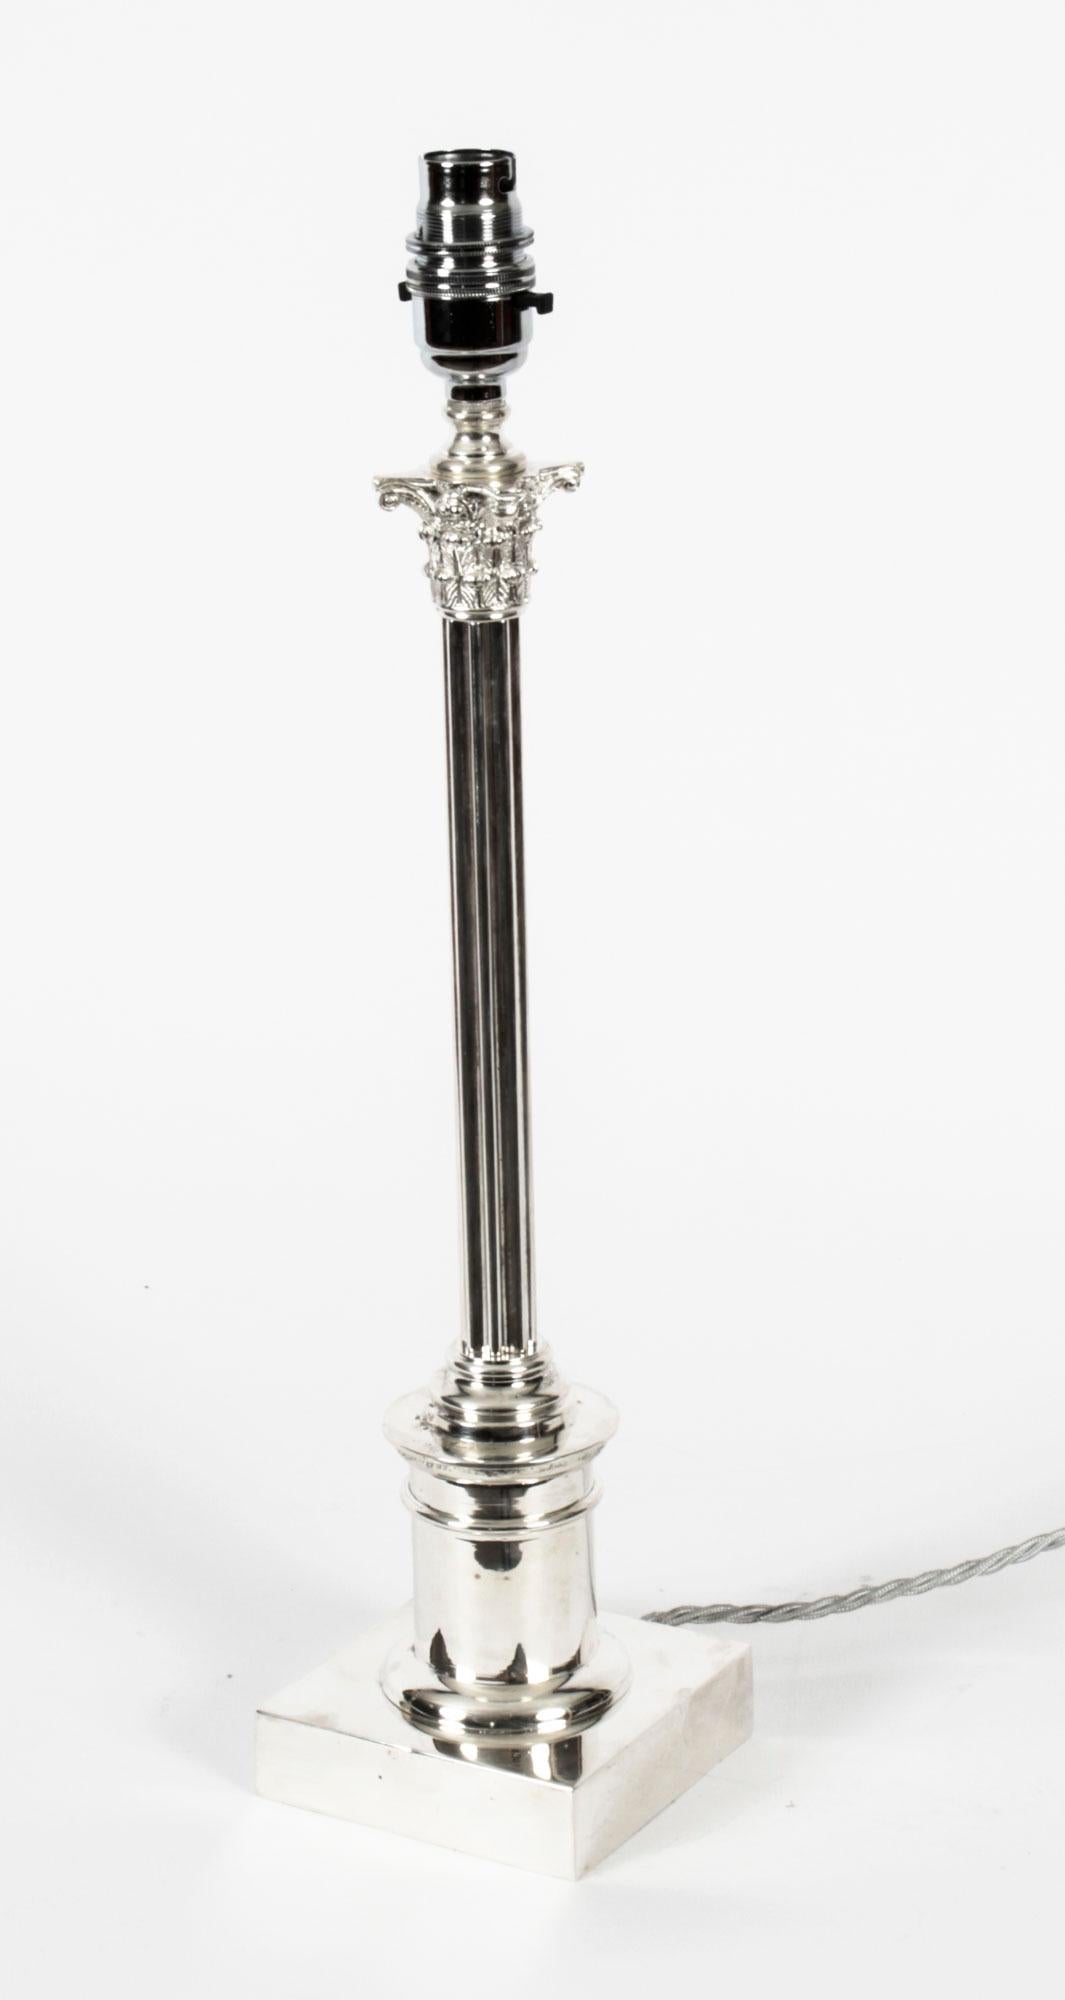 Il s'agit d'une impressionnante lampe de table Edouardienne à colonne corinthienne plaquée argent, datant d'environ 1910.
 
Elle présente un chapiteau corinthien classique décoré de feuilles d'acanthe et d'un anthémion, avec un mince arbre